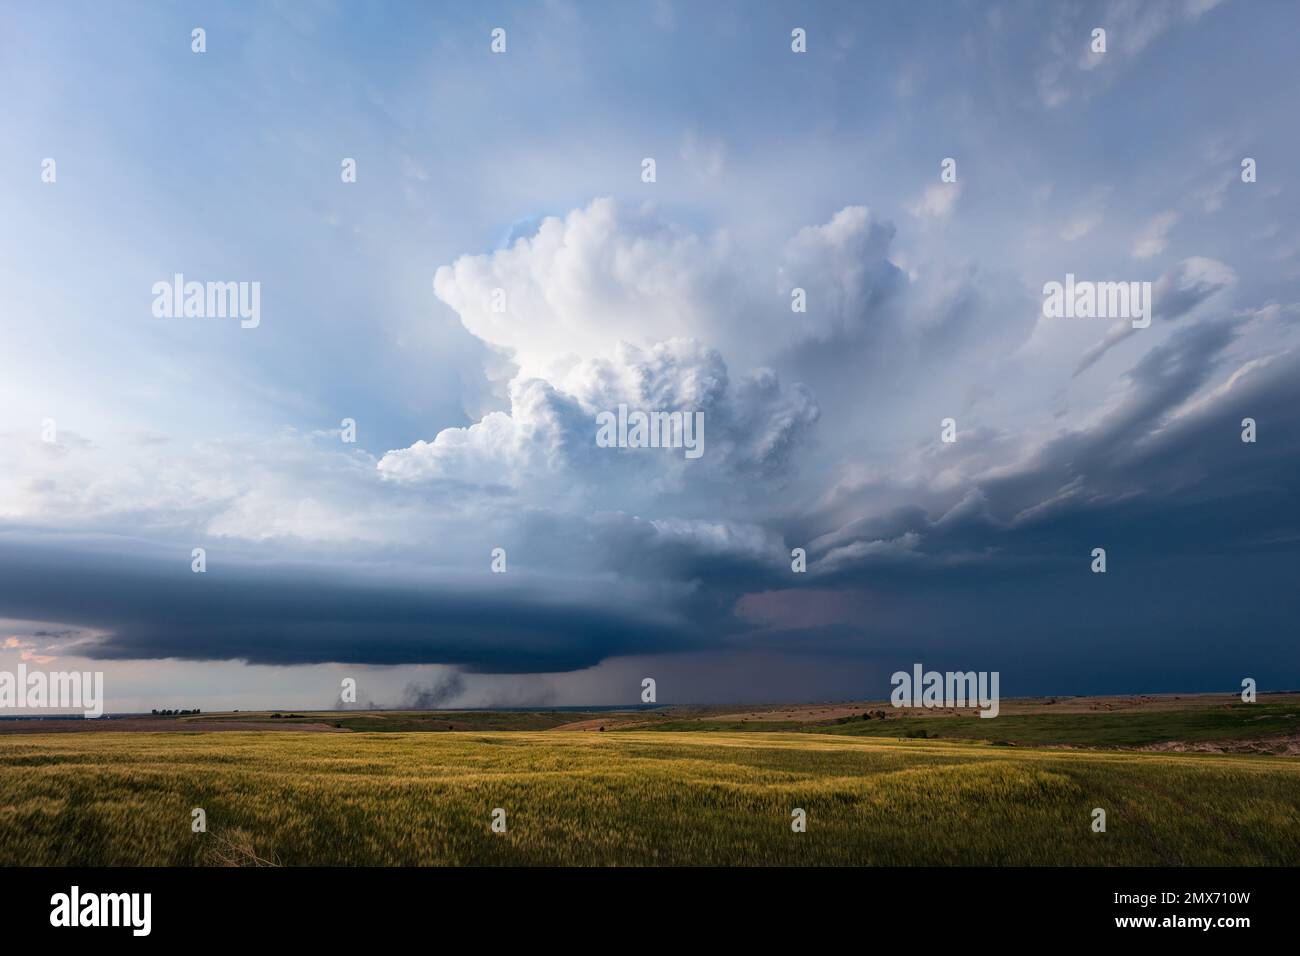 Ciel orageux spectaculaire avec un orage supercellulaire au-dessus d'un champ près de McCook, Nebraska Banque D'Images